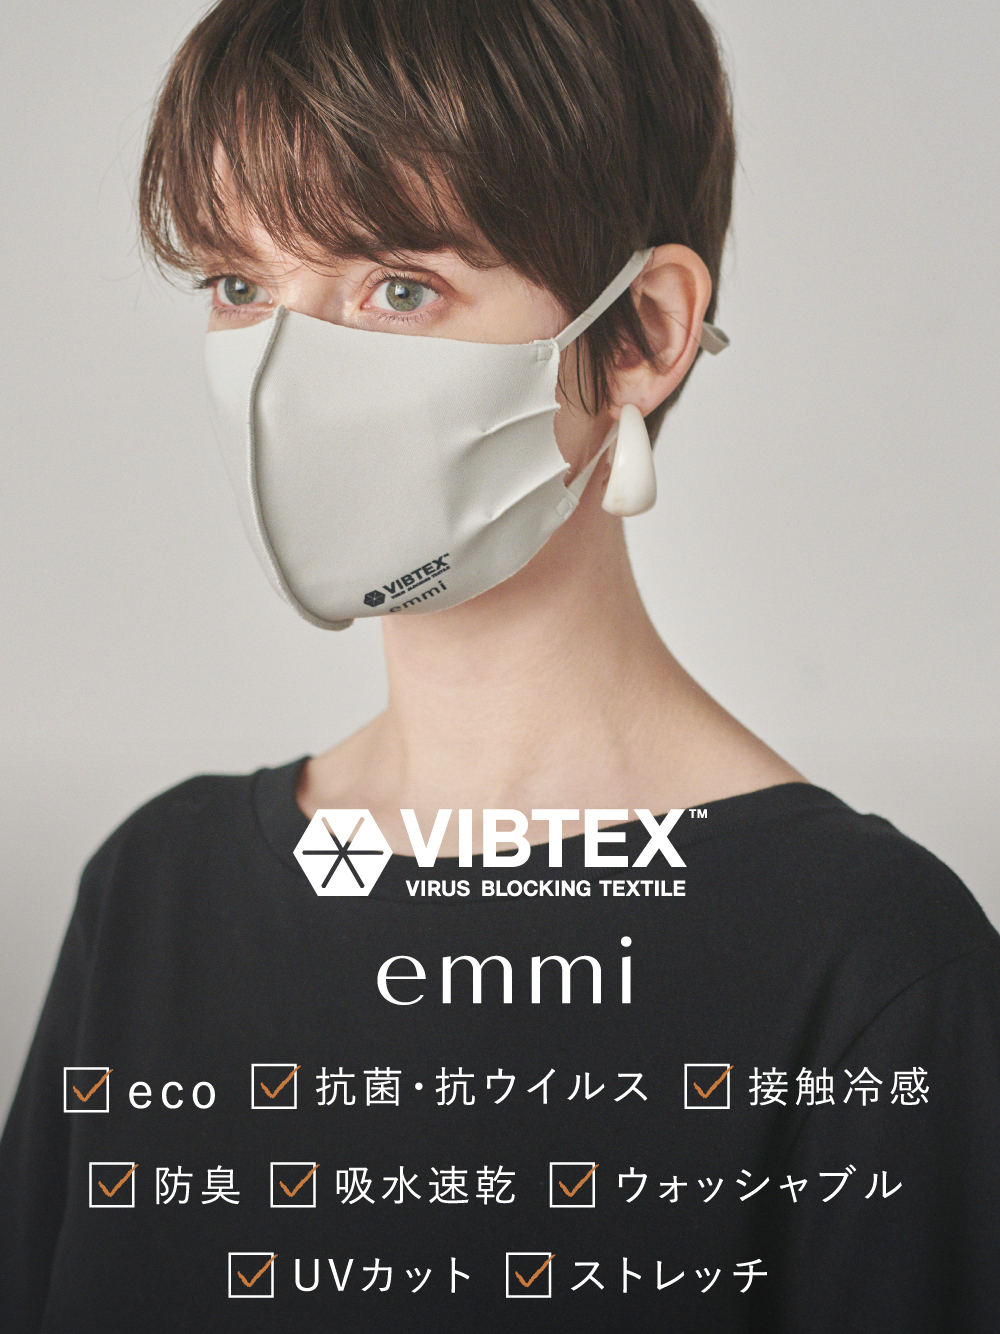 【emmi yoga】VIBTEX ポーチSet アジャスター付きマスク(MNT-F)